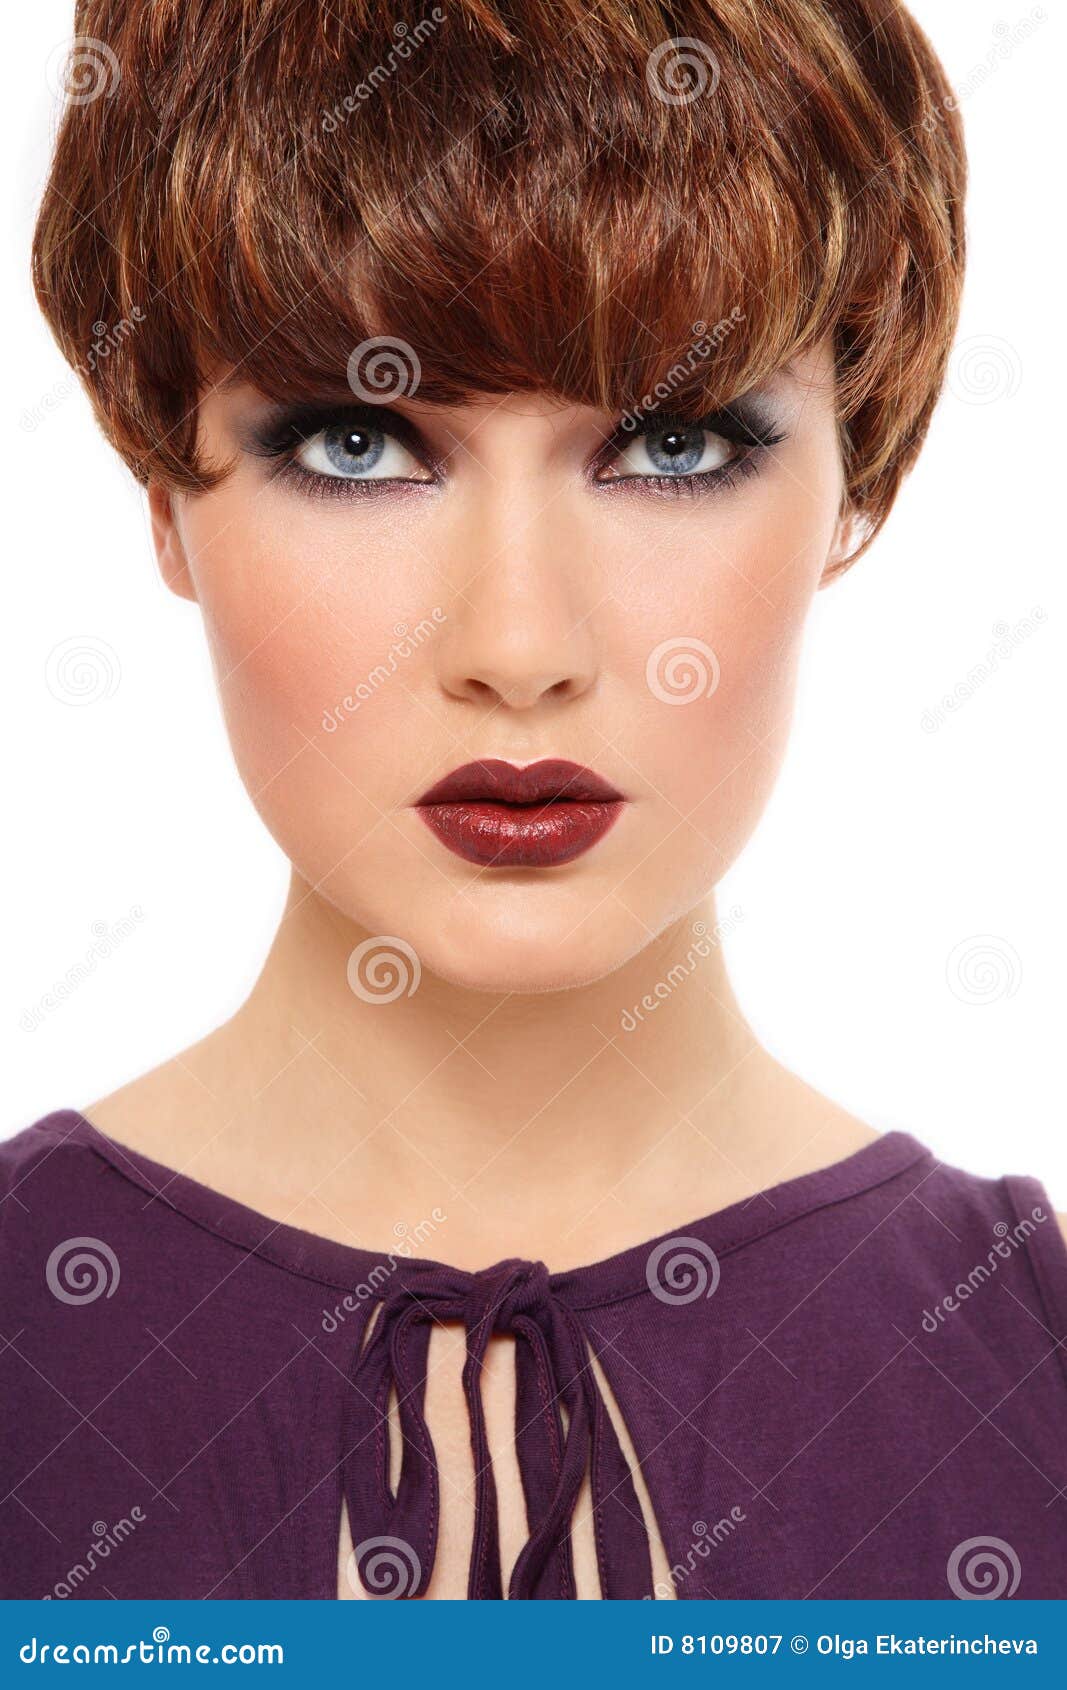 Glamorous woman stock image. Image of radiant, beautiful - 8109807